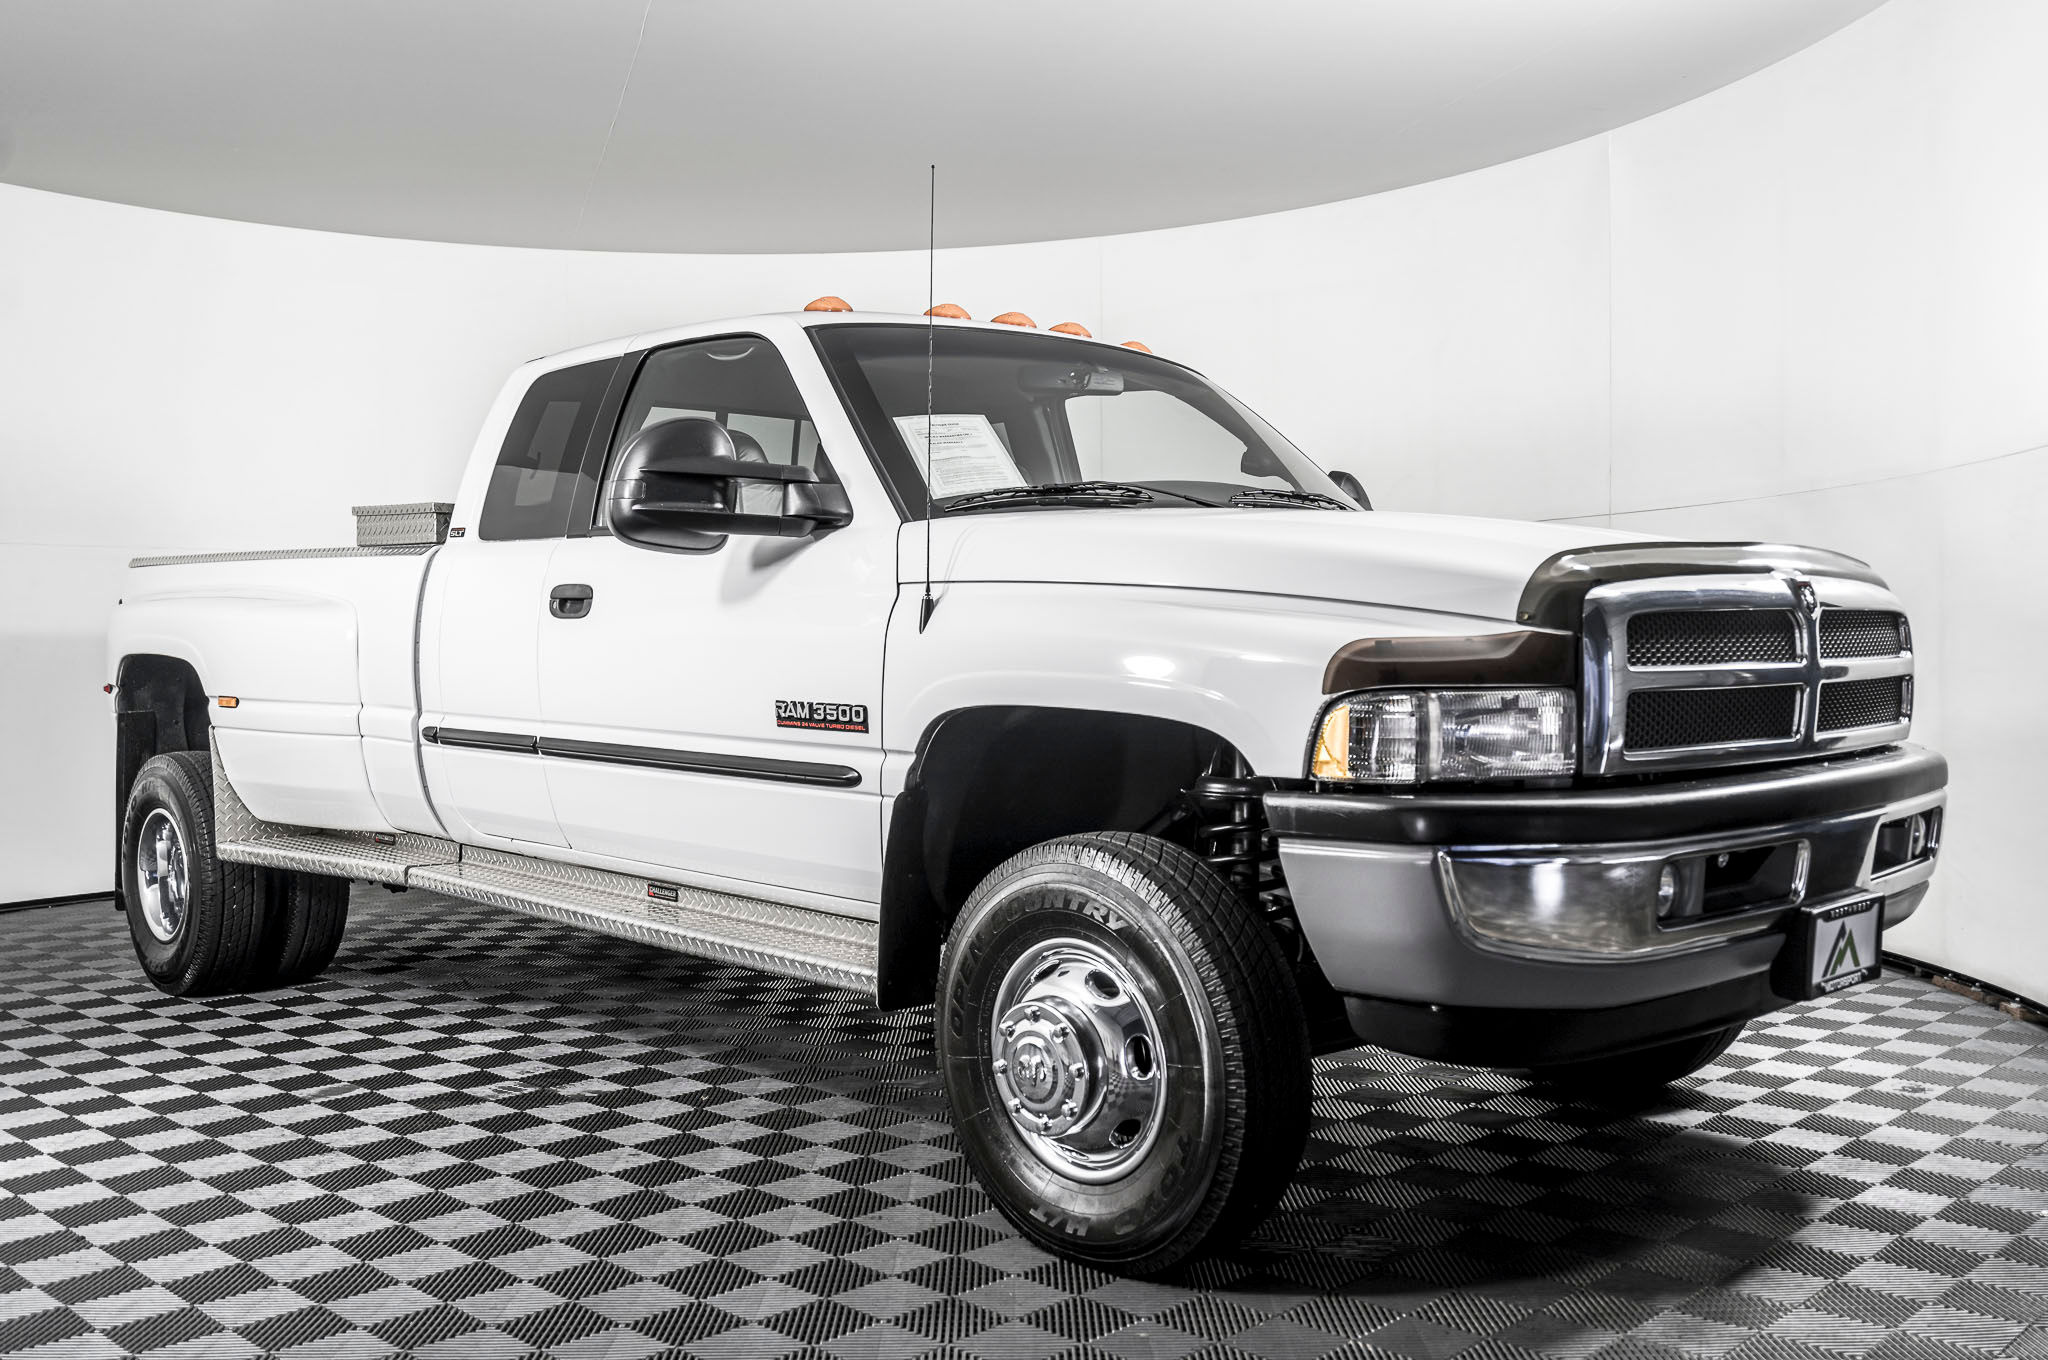 Ram 3500, Used diesel truck, Dually beast, Northwest motorsport sale, 2050x1360 HD Desktop